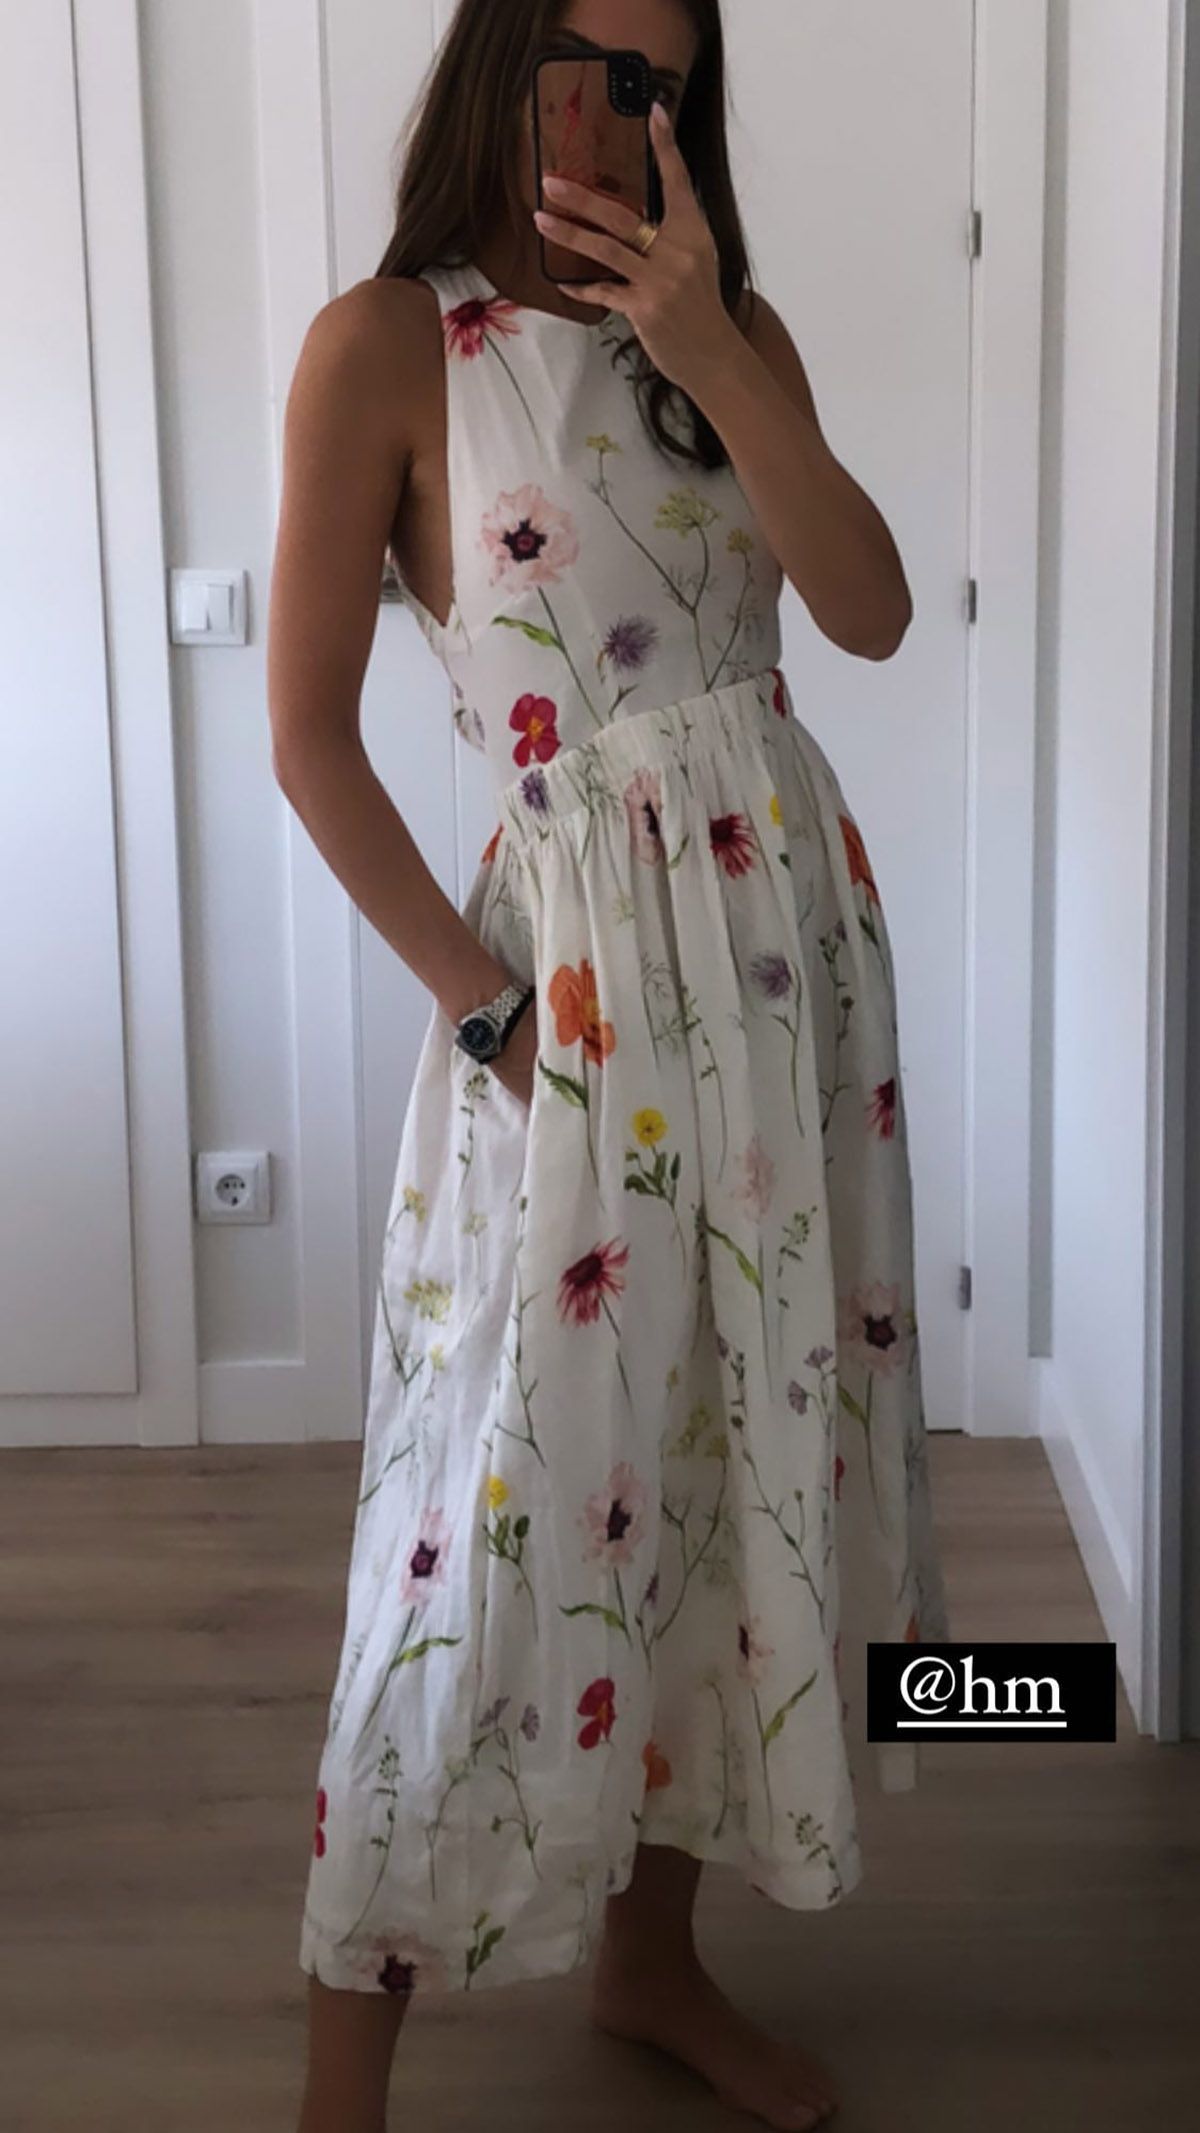 Silvia Zamora "Lady con vestido de flores de H&M